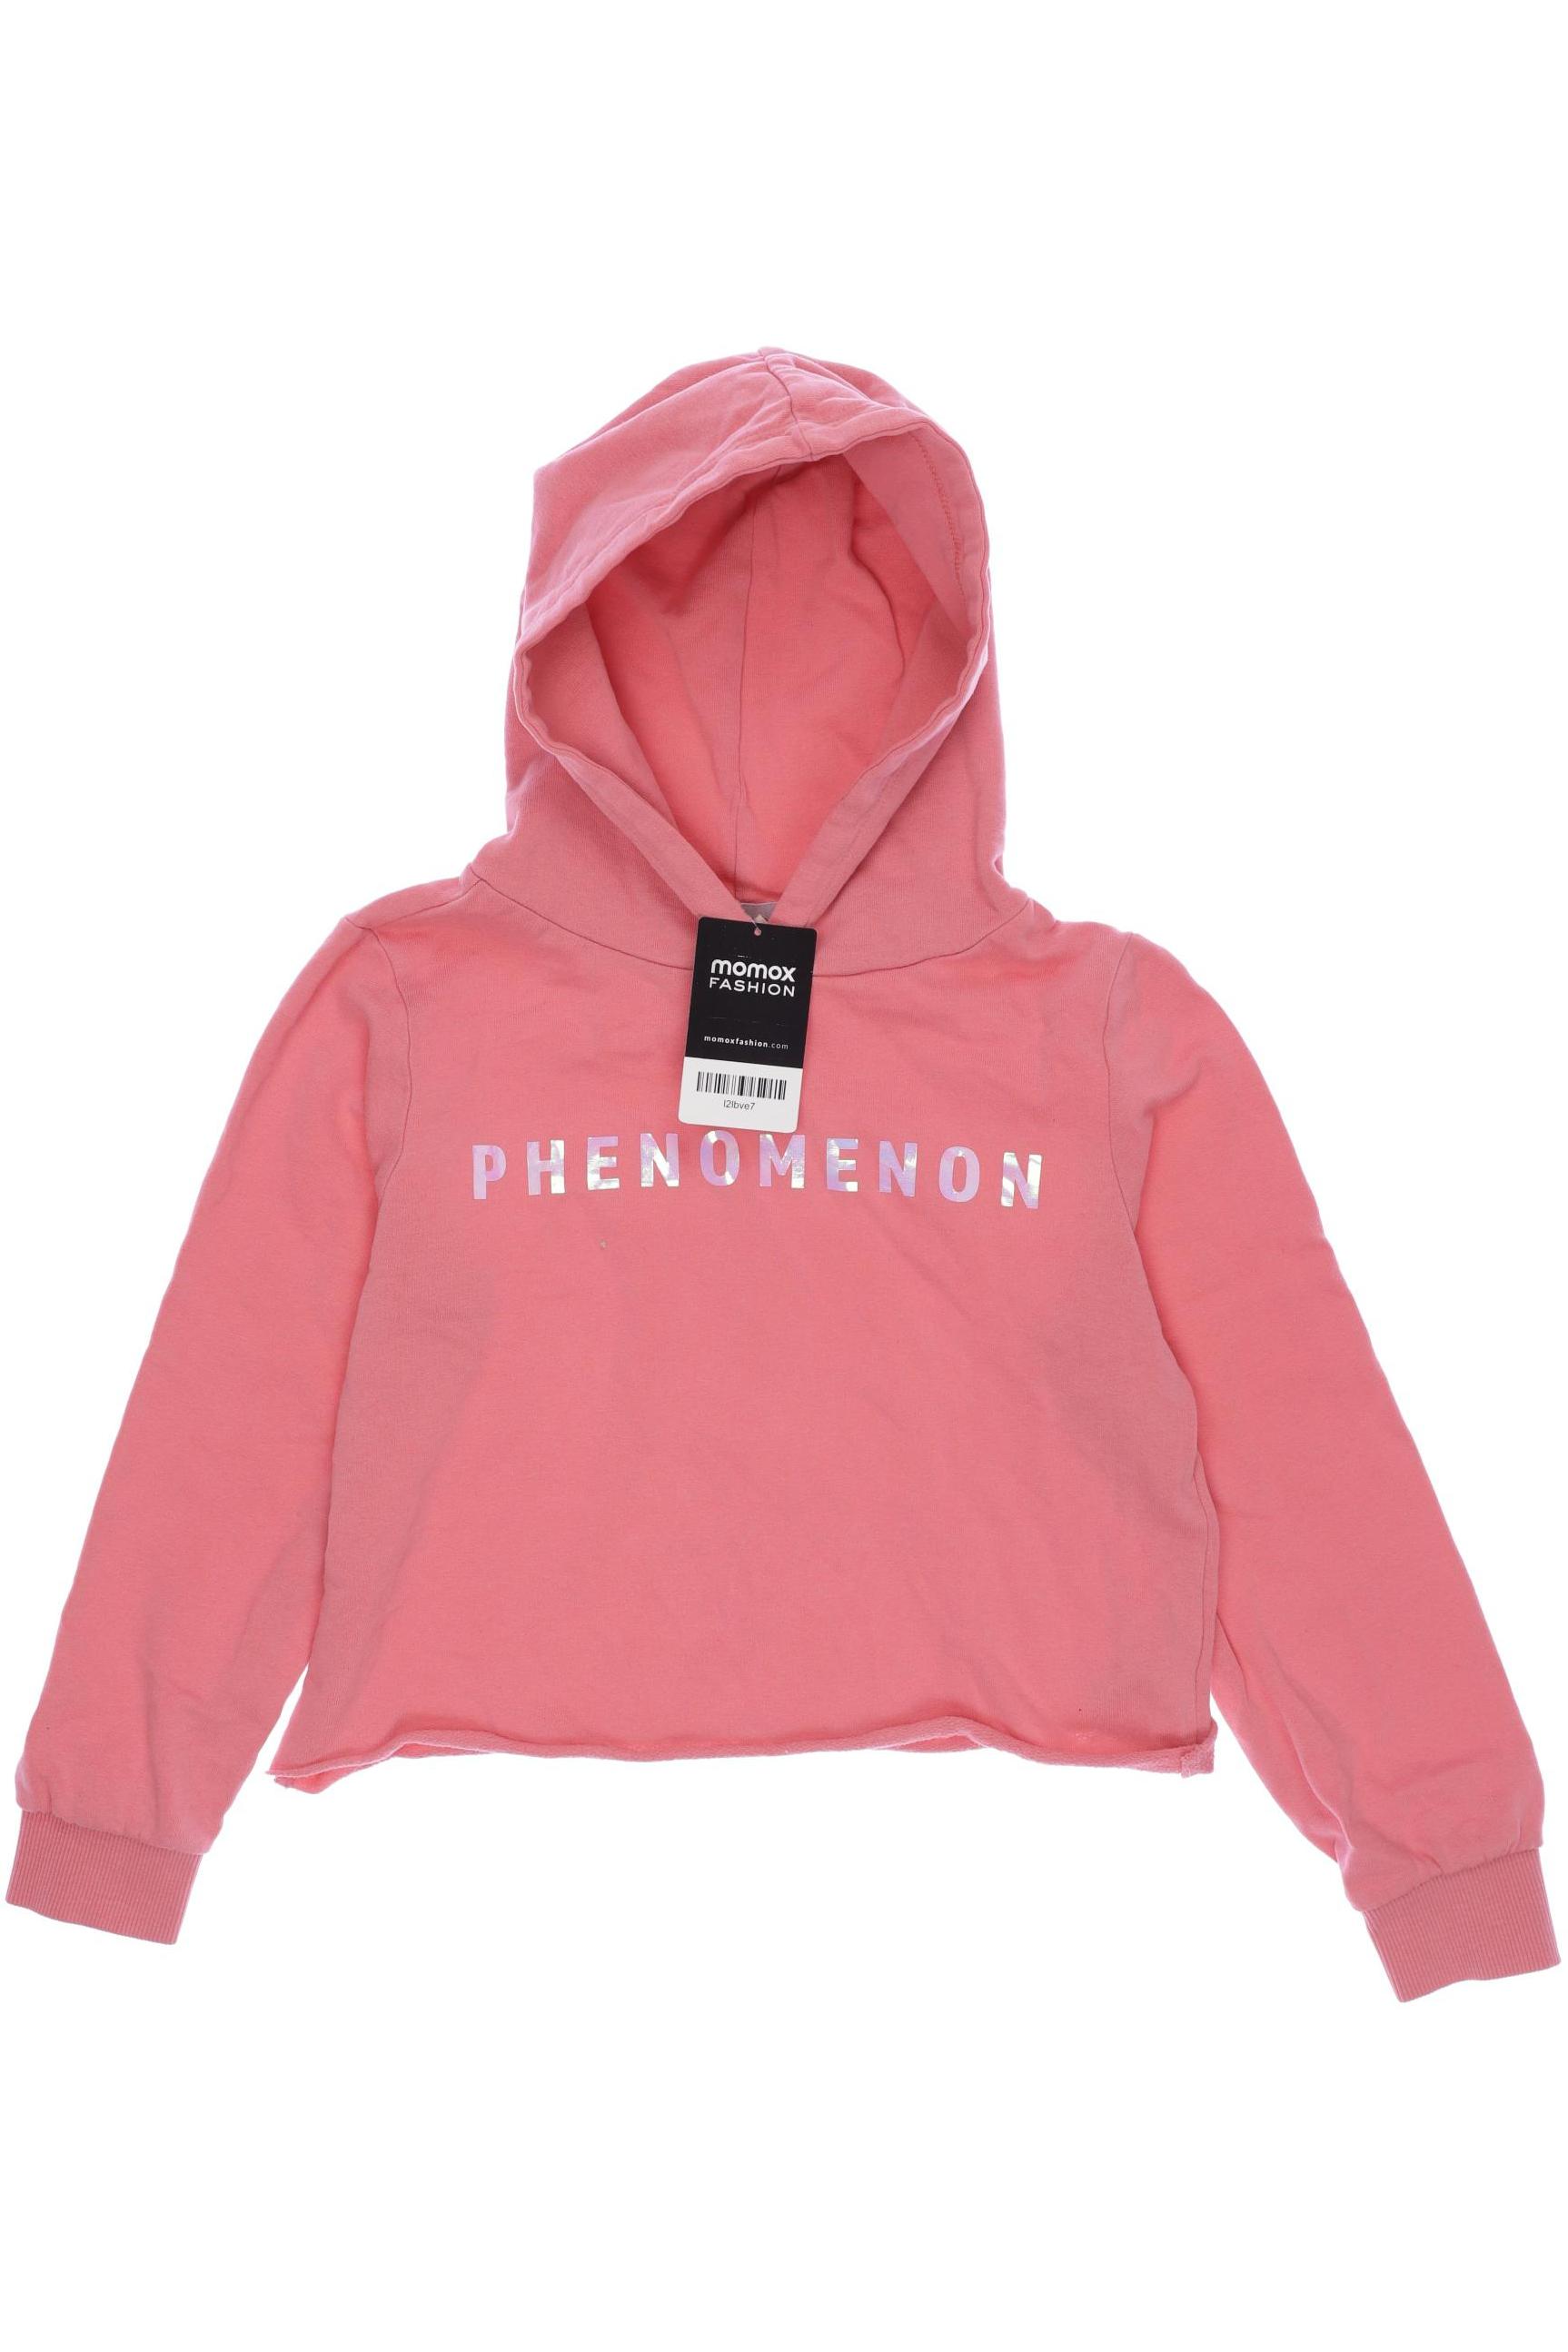 Only Damen Hoodies & Sweater, pink, Gr. 134 von Only